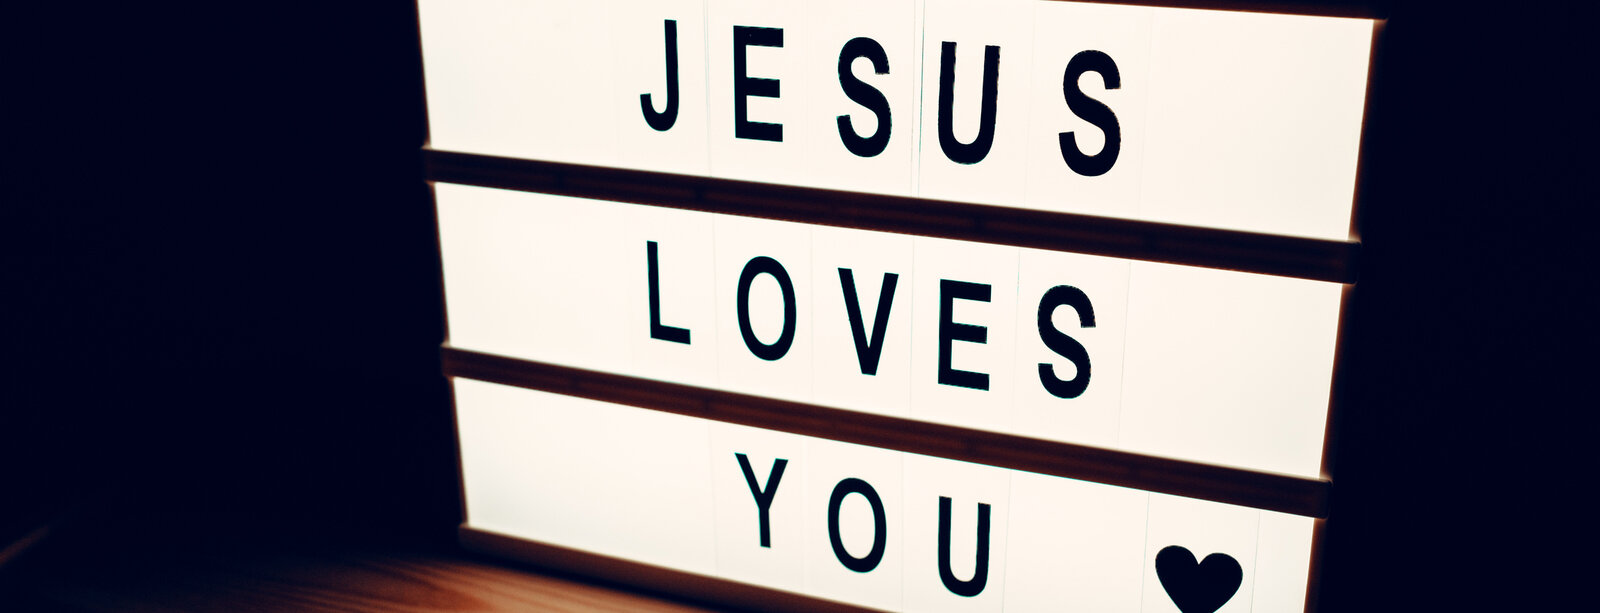 schwarze Schrift auf hellen Lichtbalken, Text: Jesus loves you; daneben ein Herz